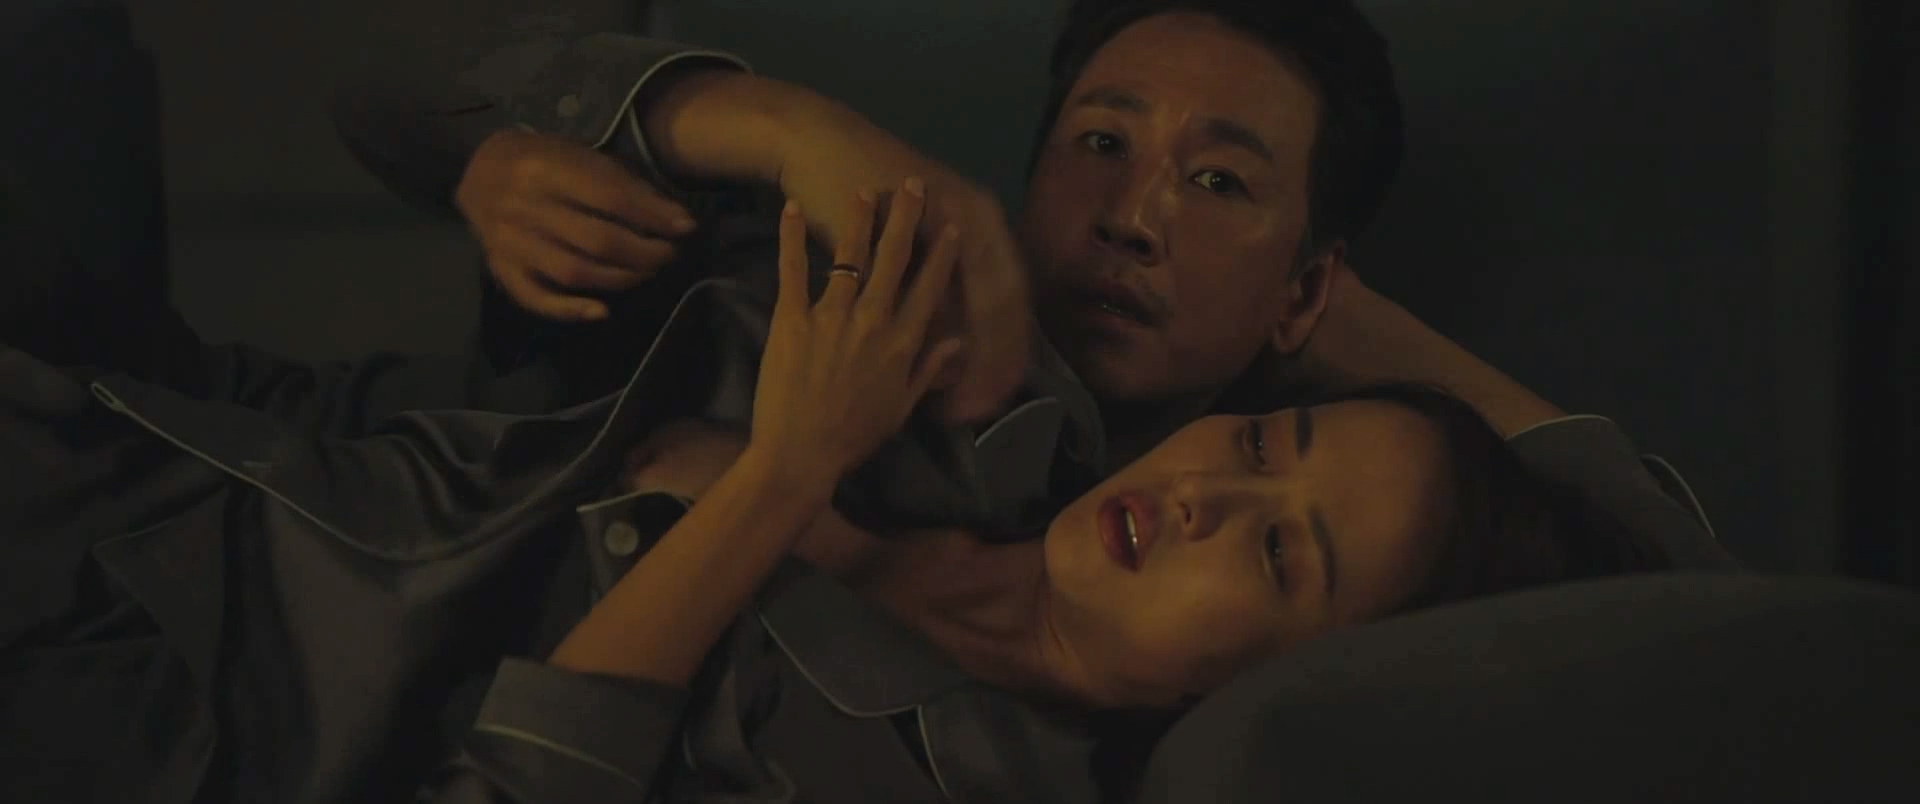 Cho yeo-jeong sex scene parasite